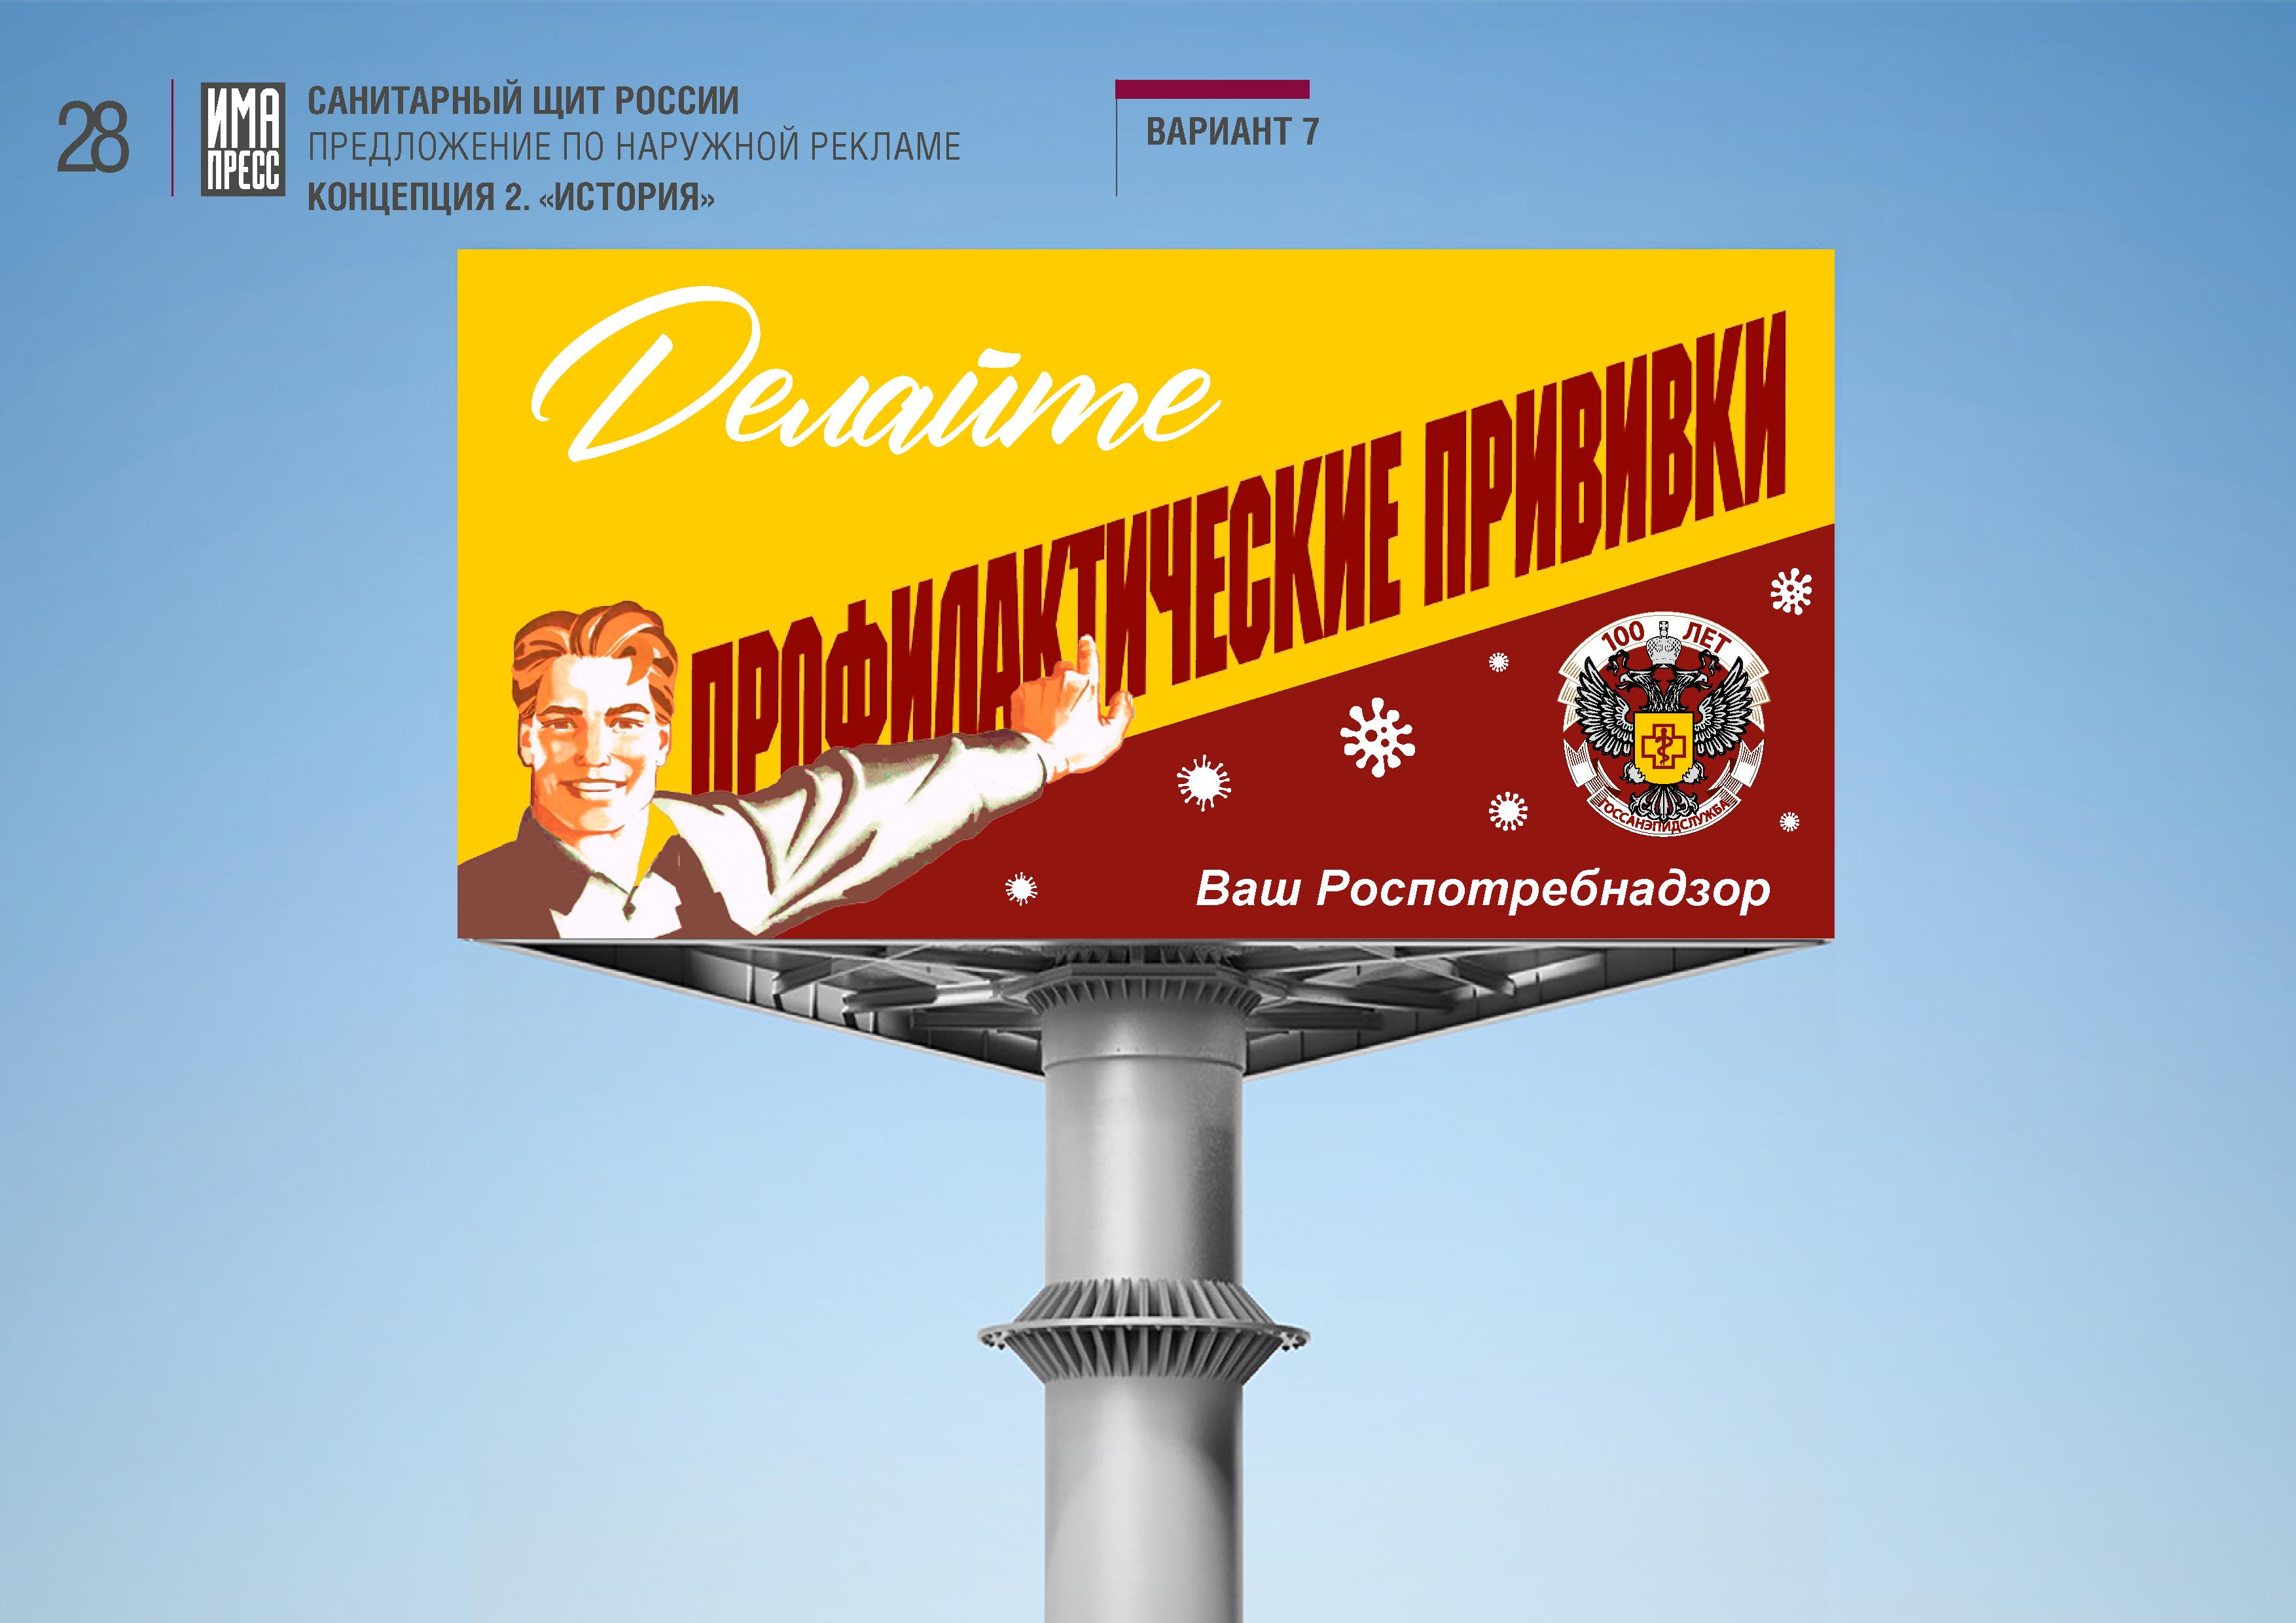 Санщит_наружная_реклама (выборка по гриппу и ОРВИ) - 0007.jpg